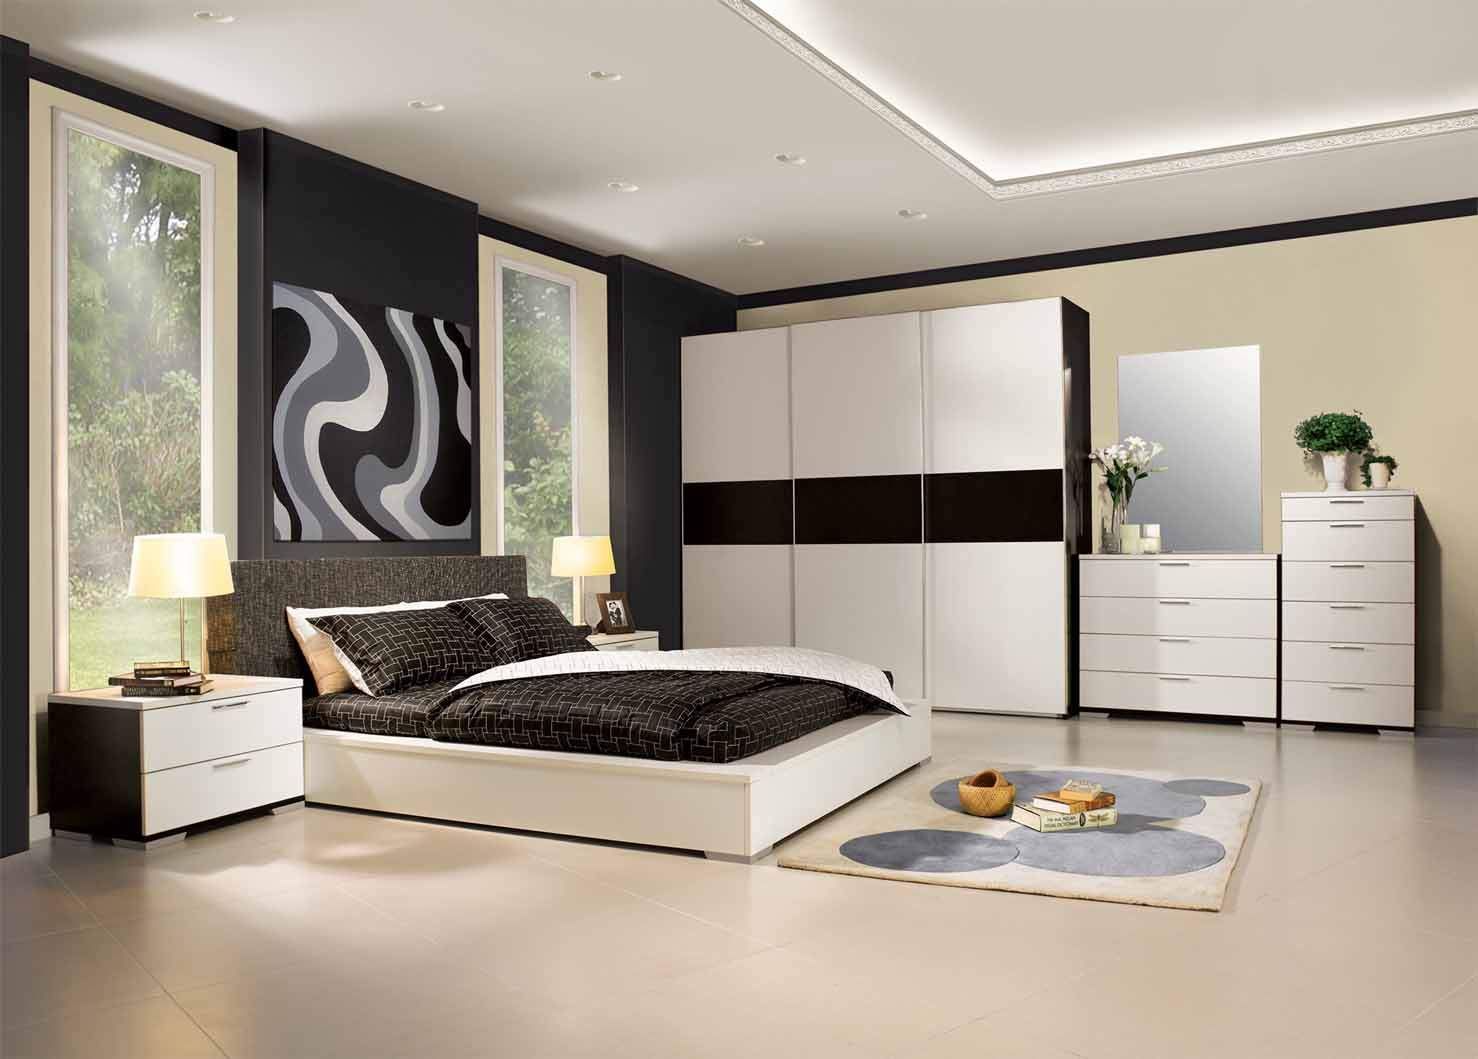 The Interia, The Interia The Interia Modern style bedroom